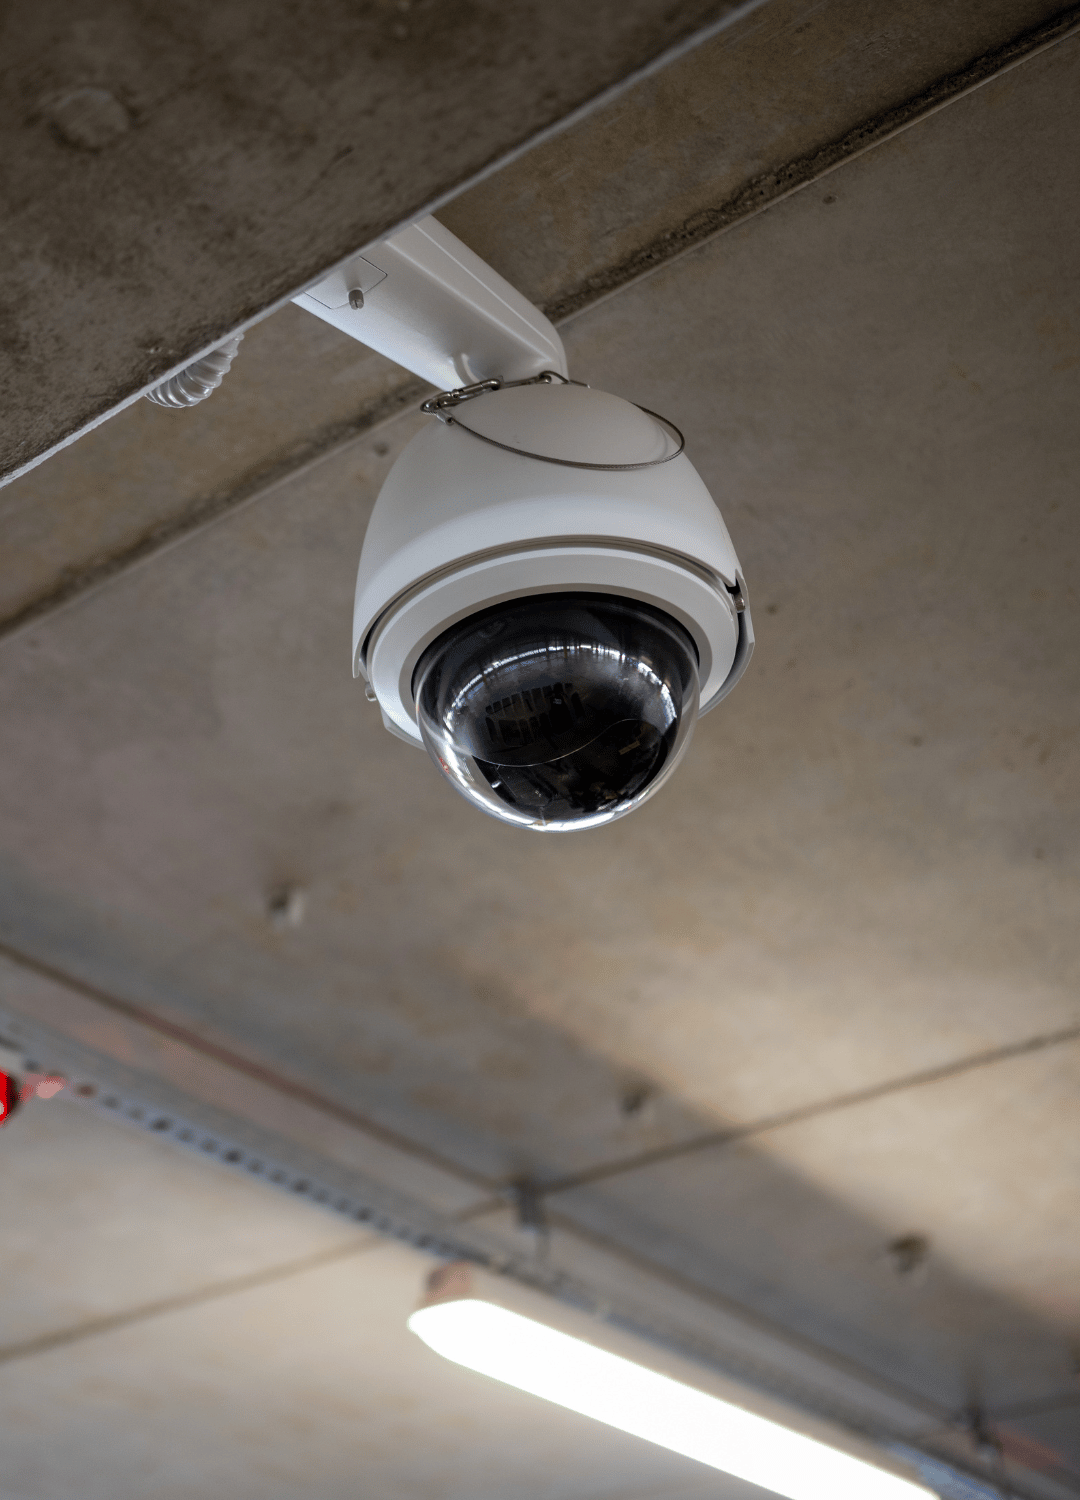 Telecamera di sorveglianza installata sul soffitto